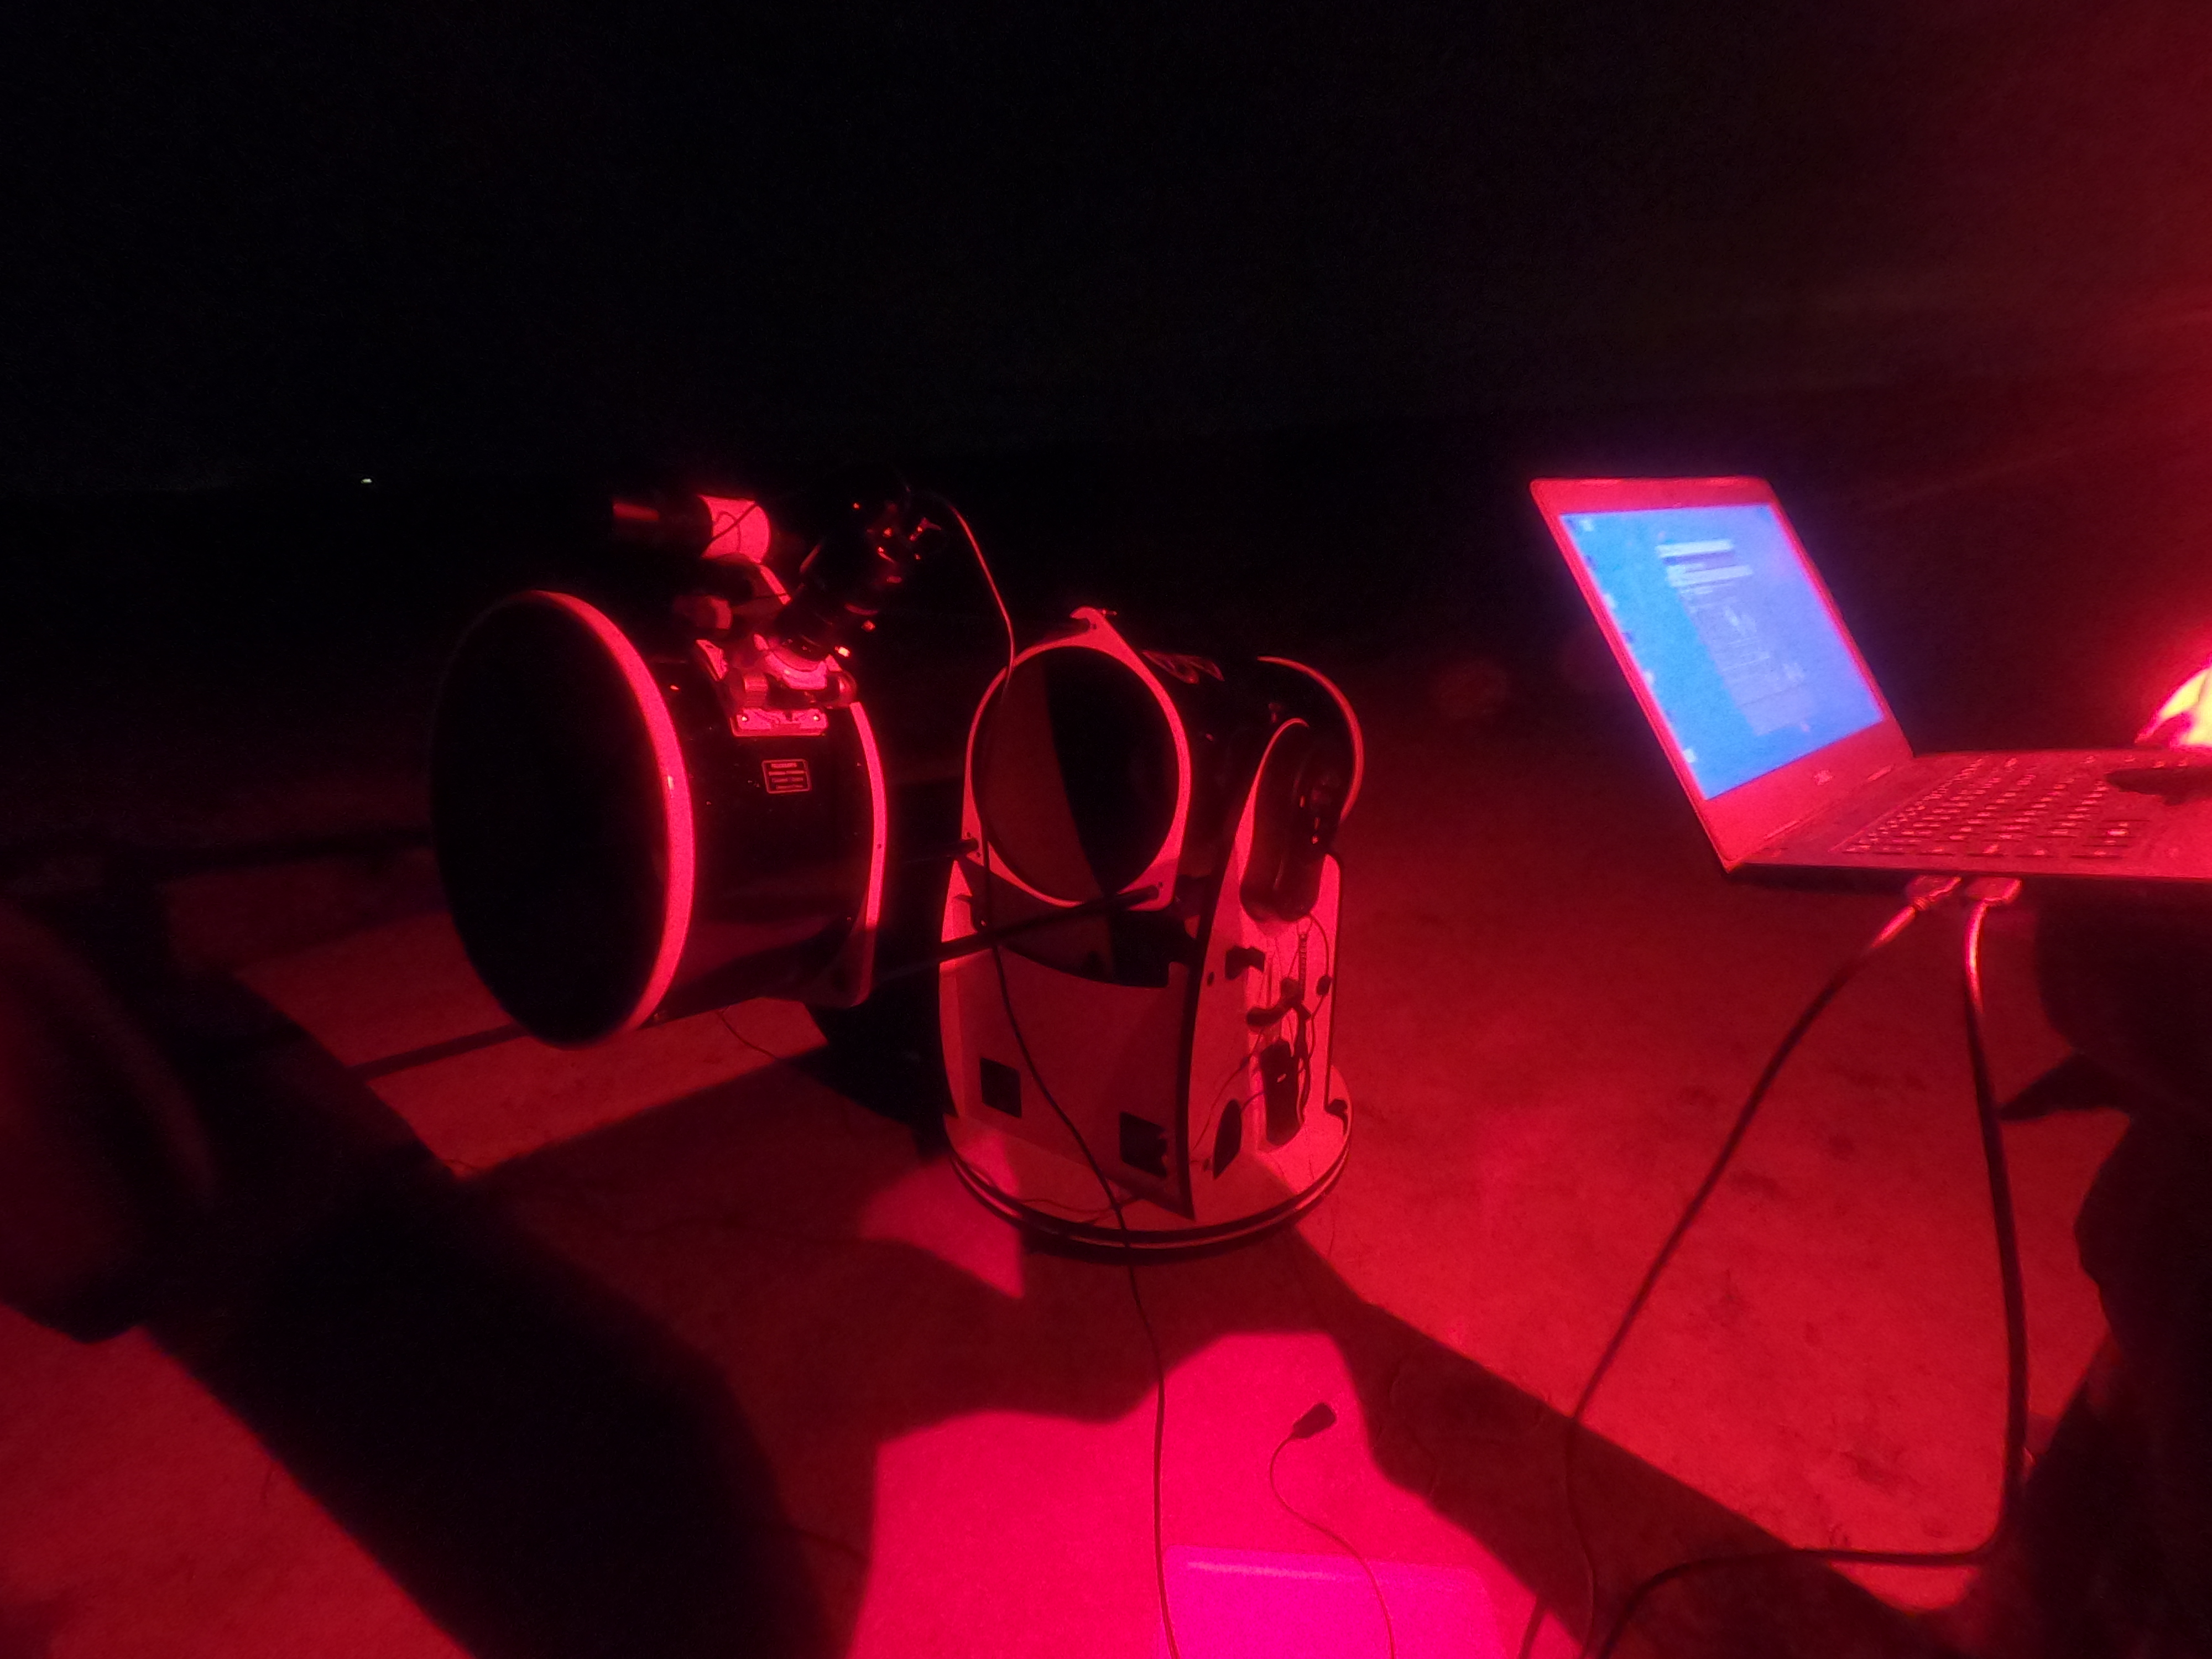 Une télescope avec quelqu’un à côté qui tient un PC. Tout est éclairé par une lumière rouge